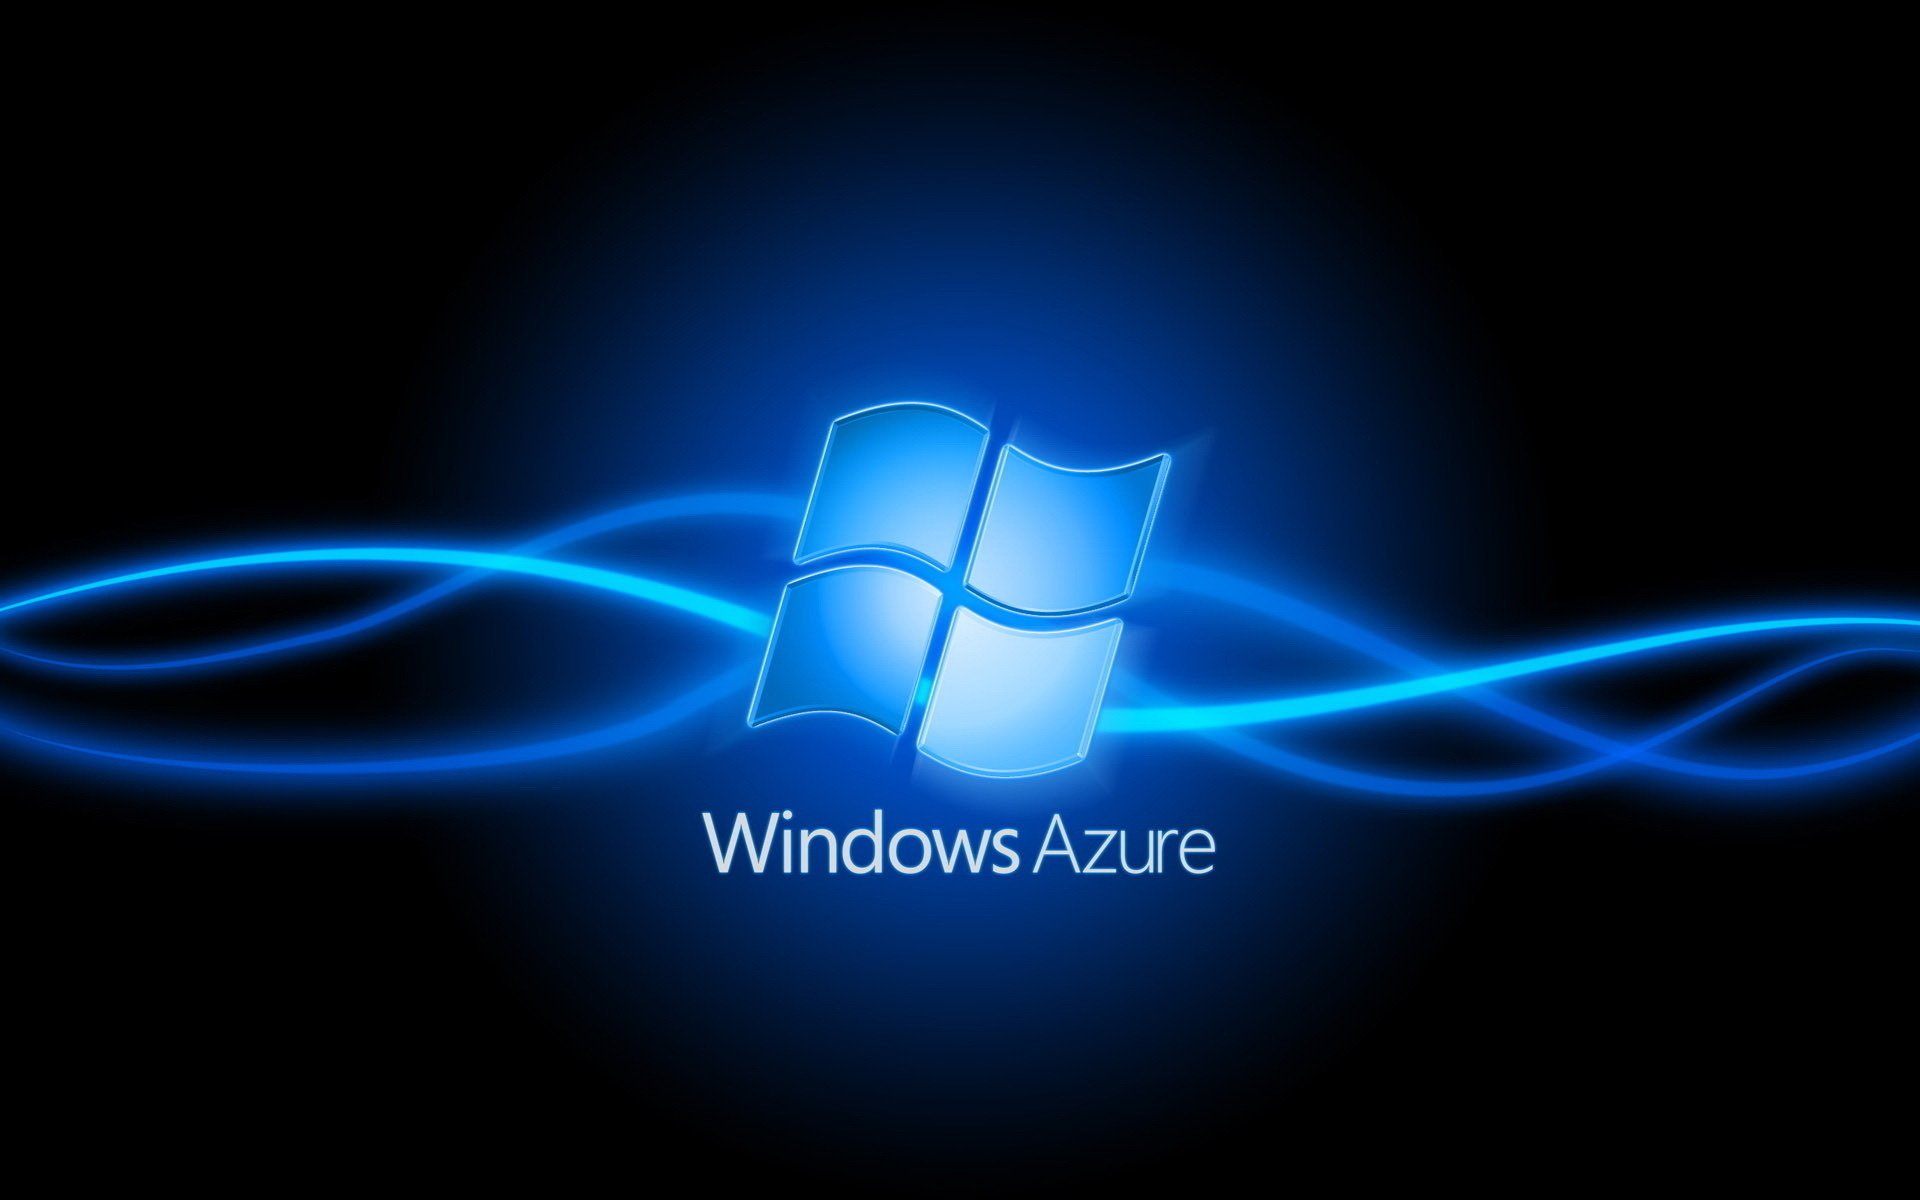 Логотип Windows Azure на чёрном фоне